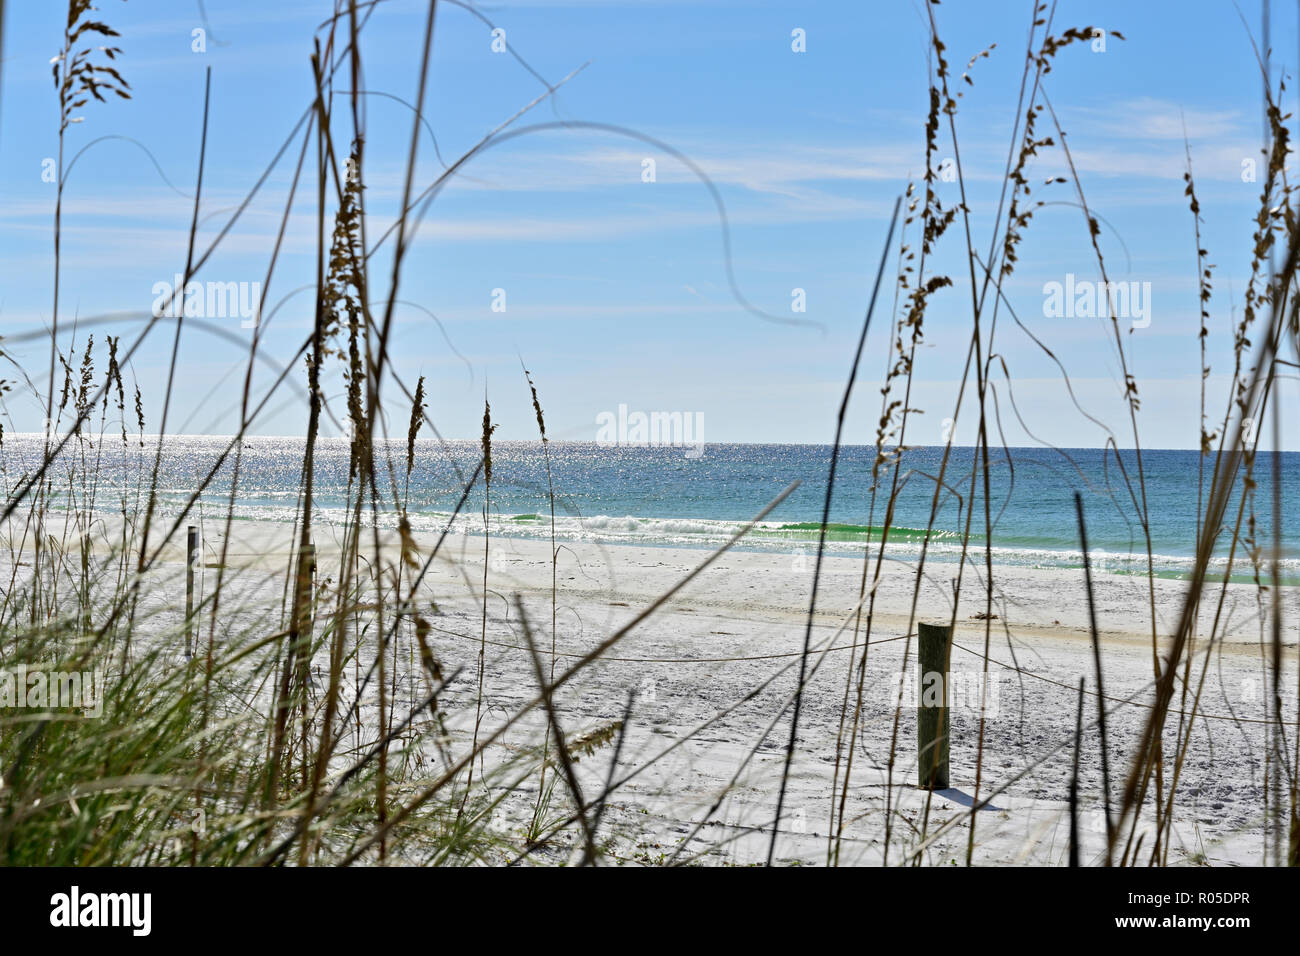 Vista de mar protegida de la avena y el Golfo de México a lo largo de arena blanca o de arena de playa en la costa del golfo de Florida en la región del Panhandle de Florida, Estados Unidos. Foto de stock